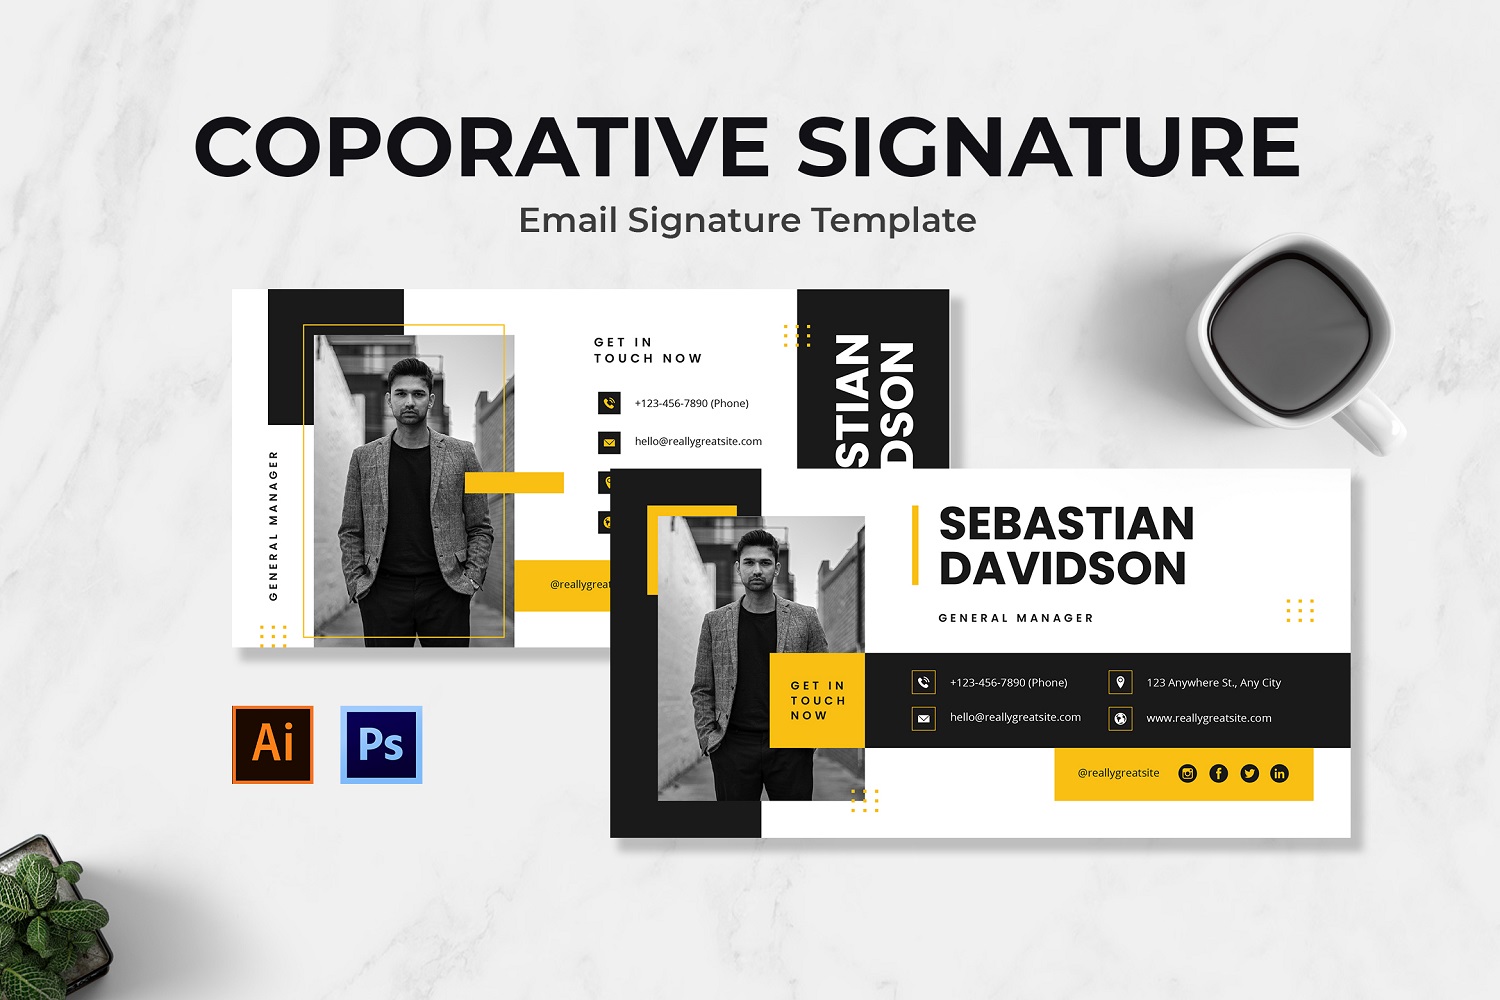 Corporative Signature Email Signature